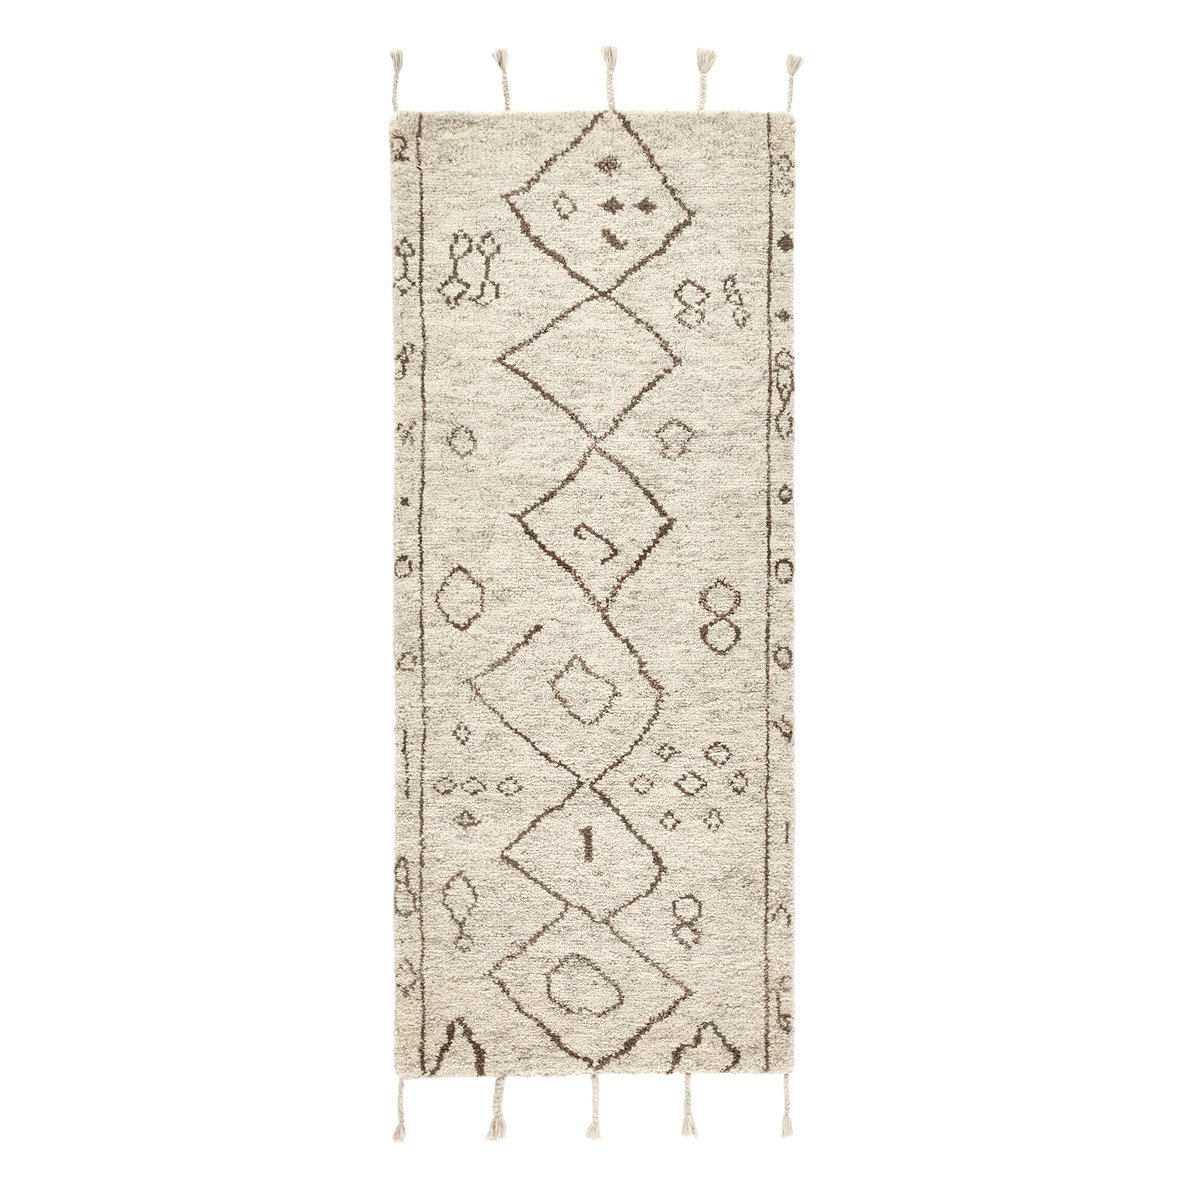 фото Дорожка ковровая для коридора в берберском стиле из шерсти, padma am.pm